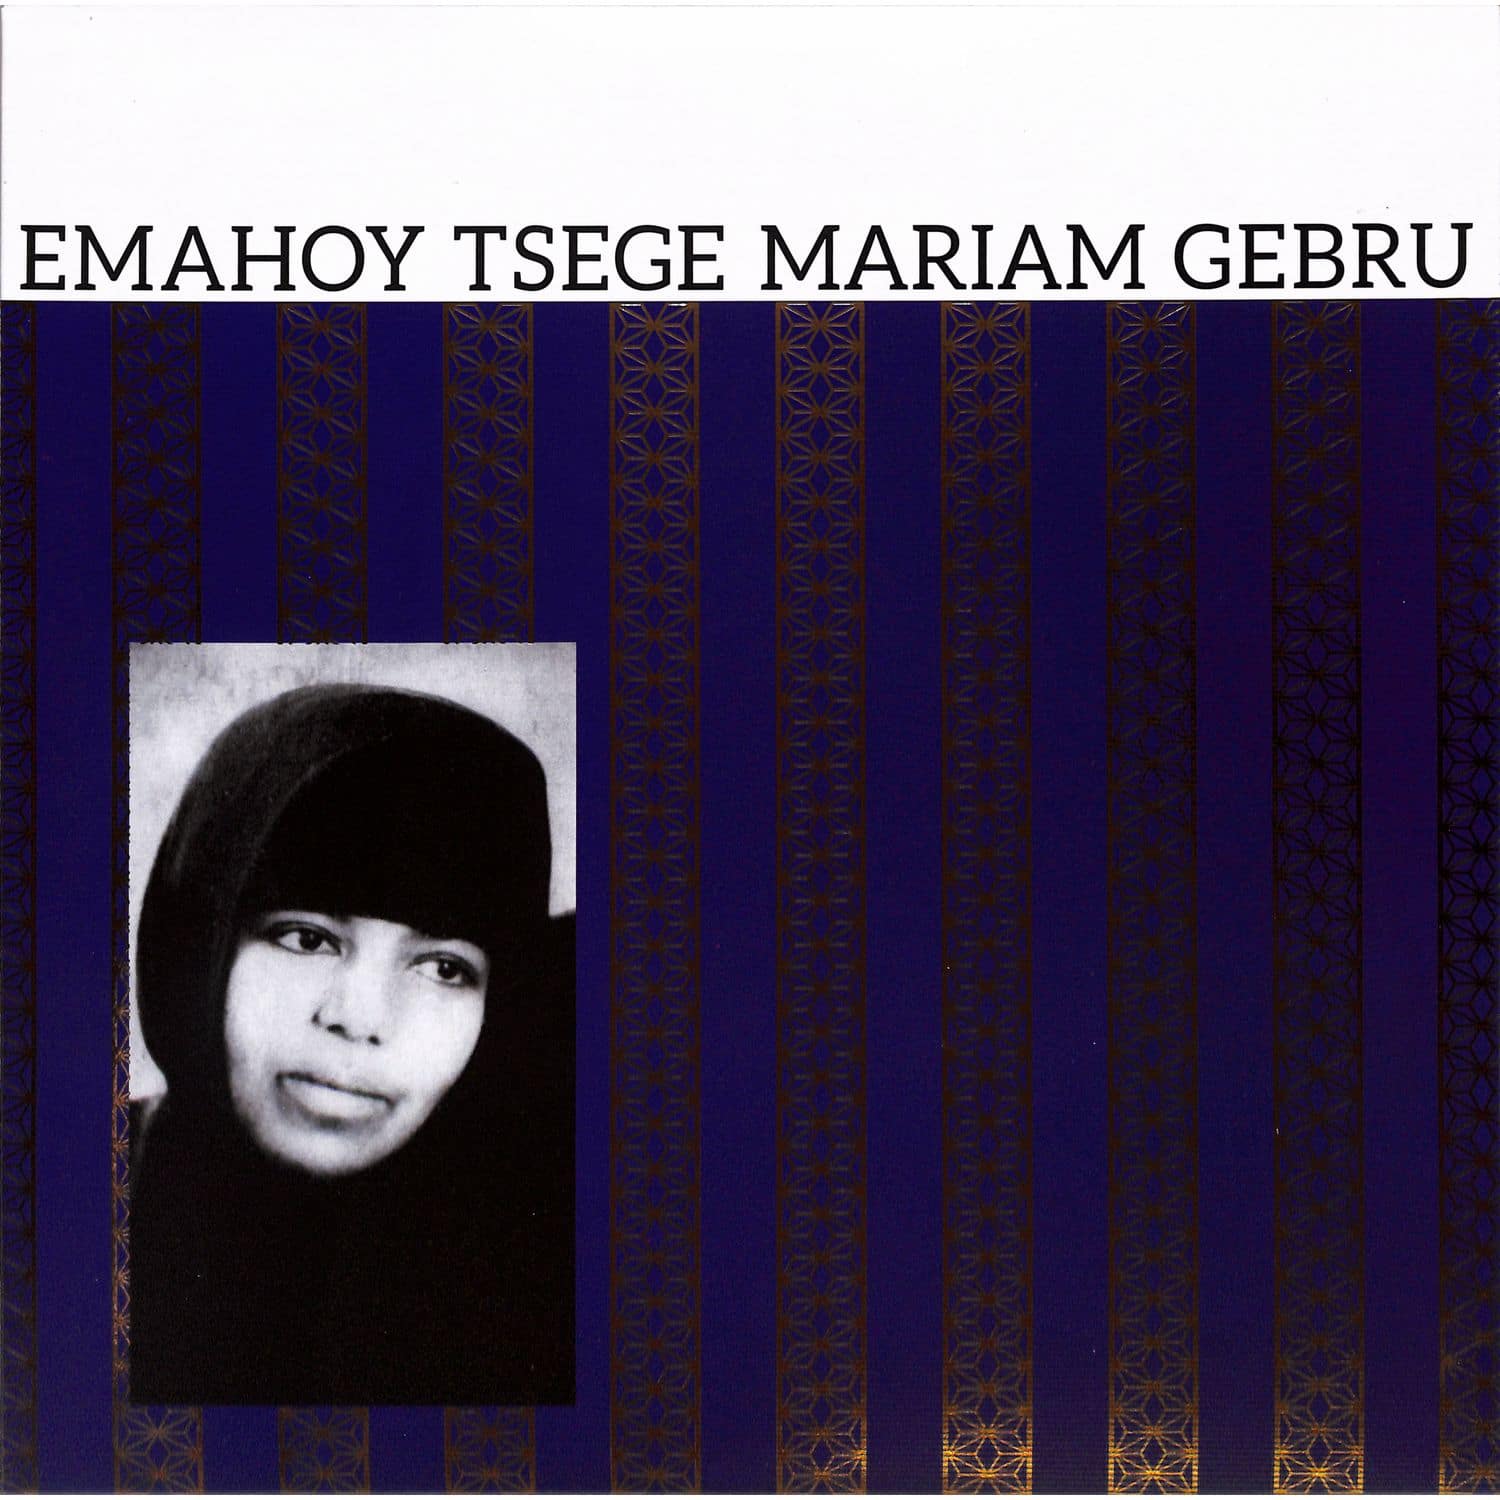 Emahoy Tsege Mariam Gebru - EMAHOY TSEGE MARIAM GEBRU 